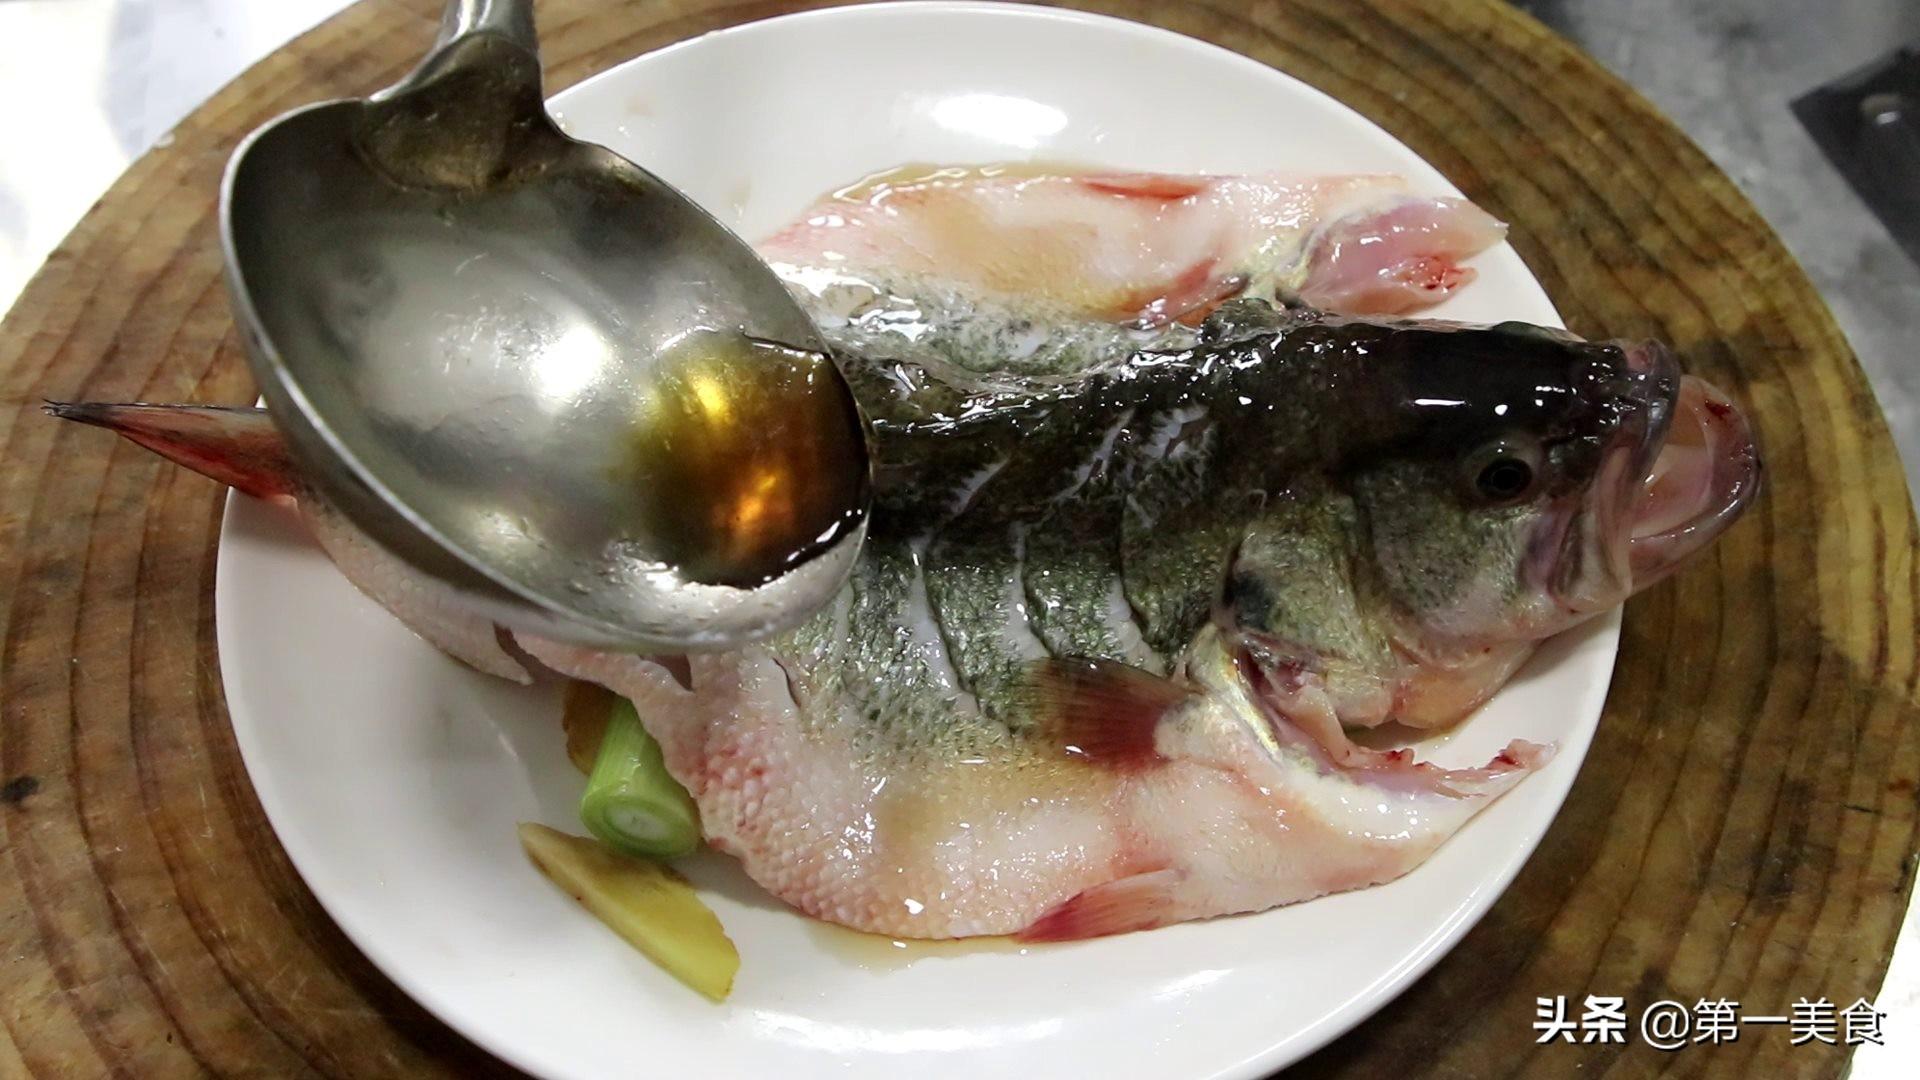 鲈鱼清蒸怎么做好吃 正确的蒸鲈鱼方法-4